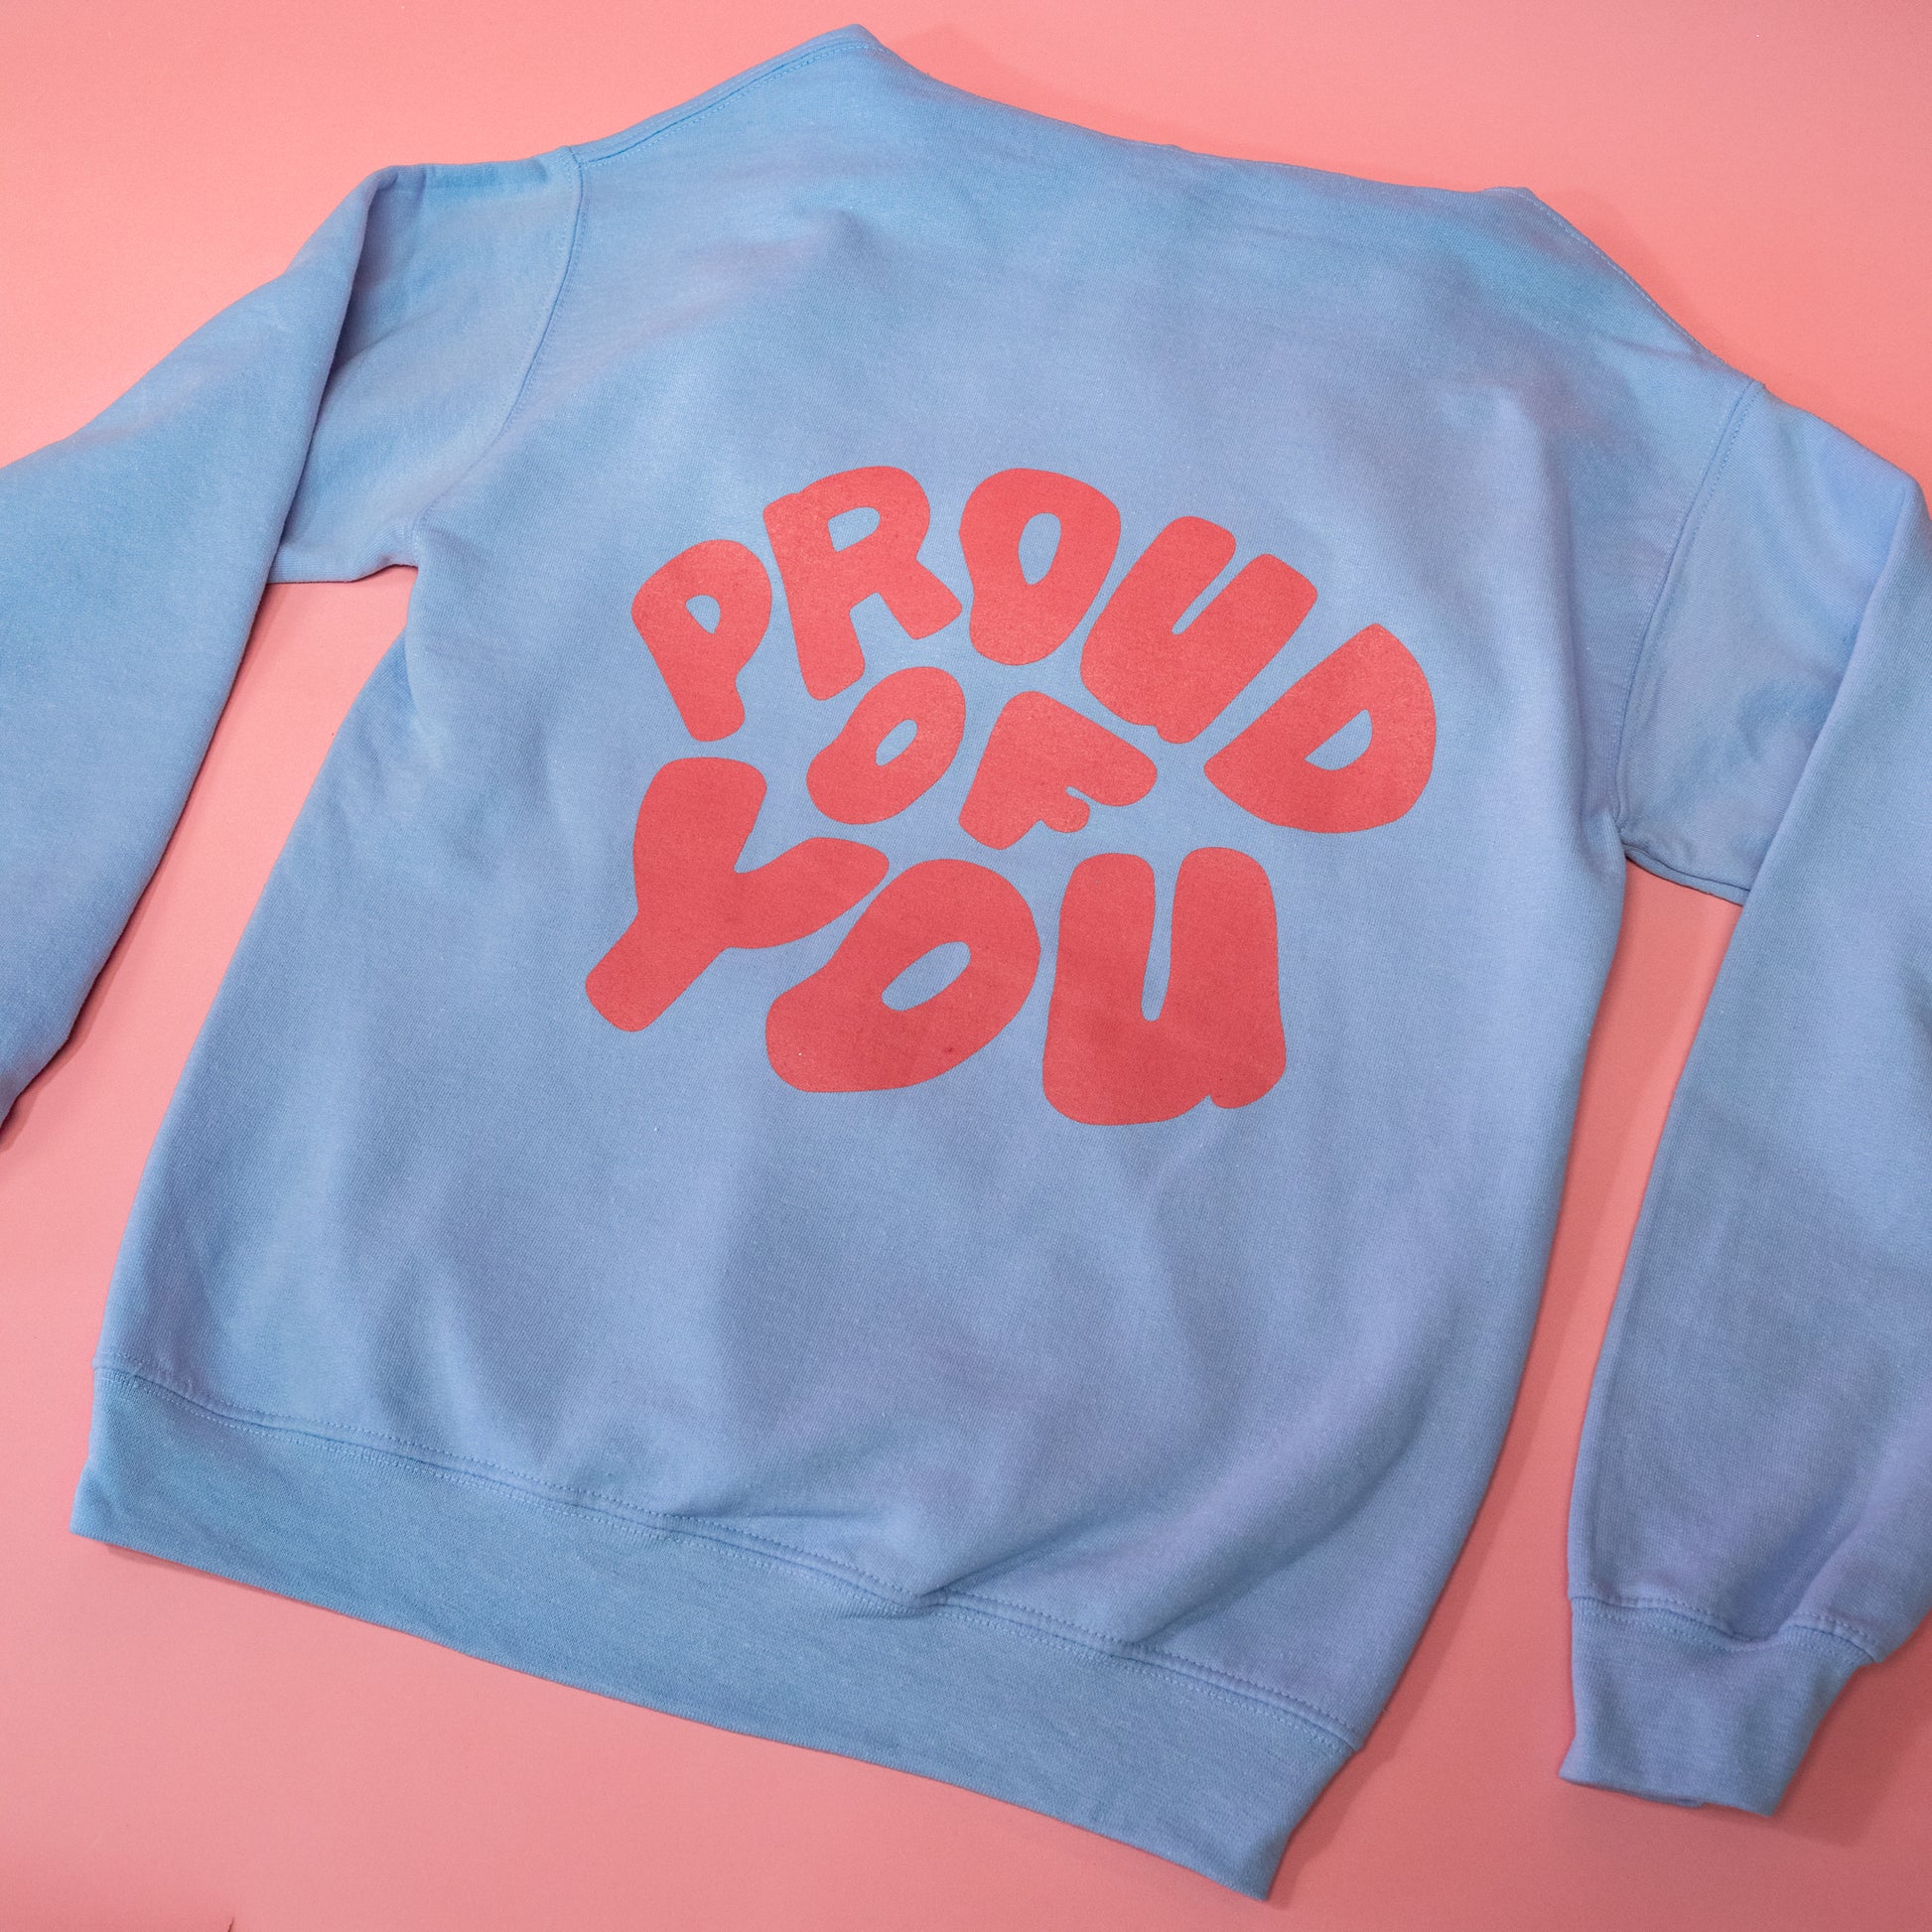 proud of you blue sweatshirt